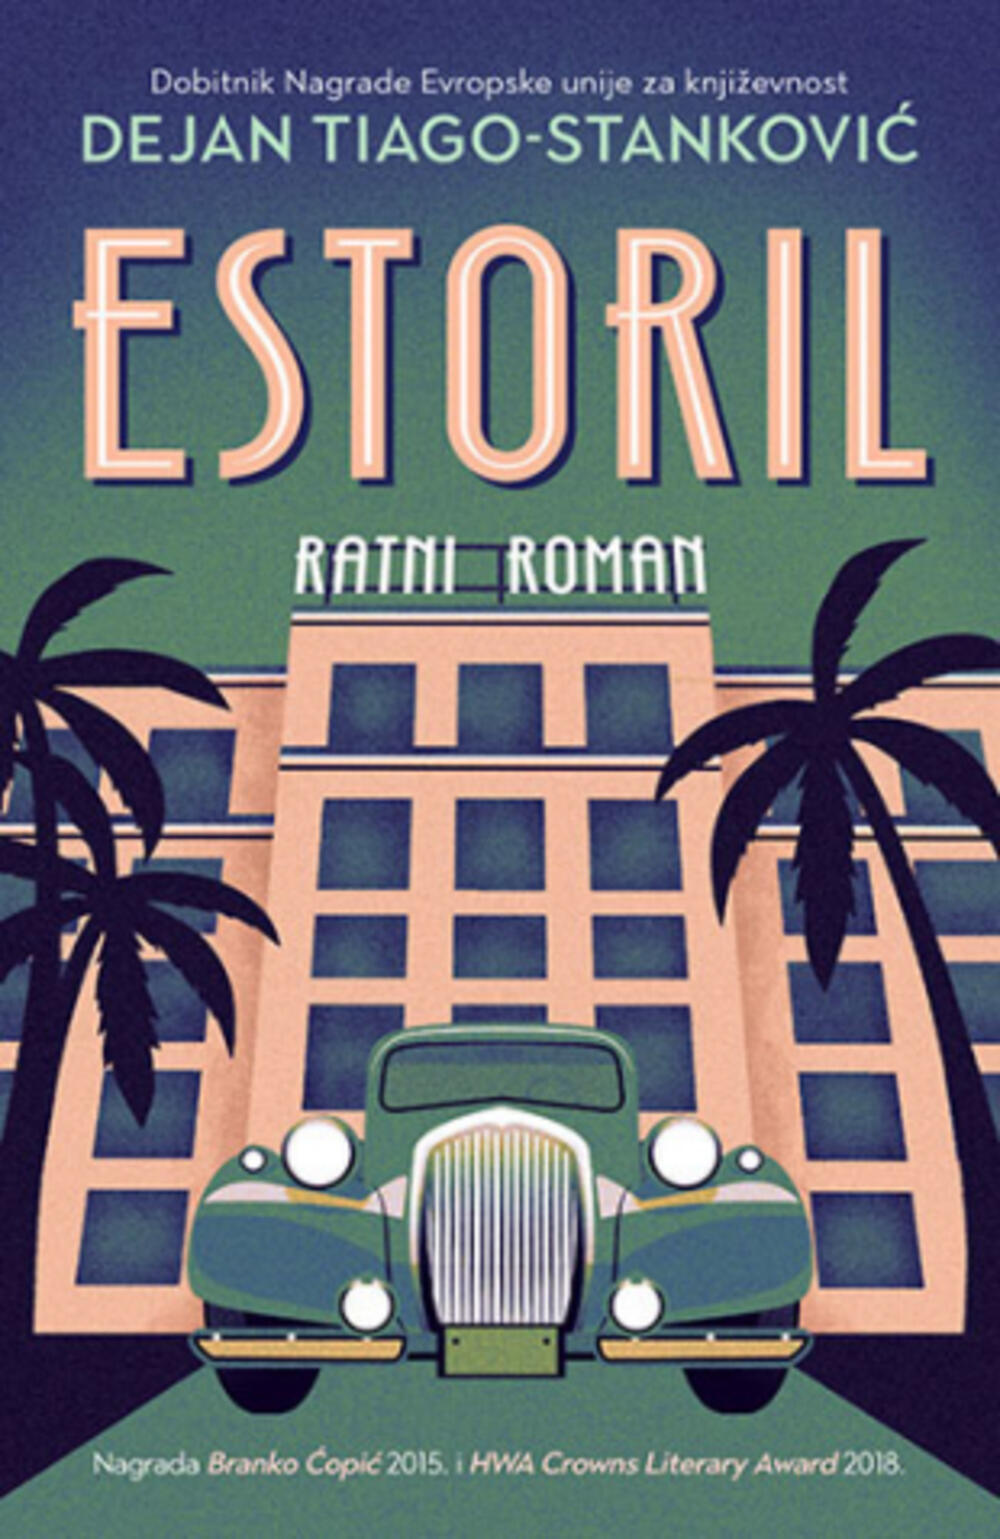 Roman 'Estoril'